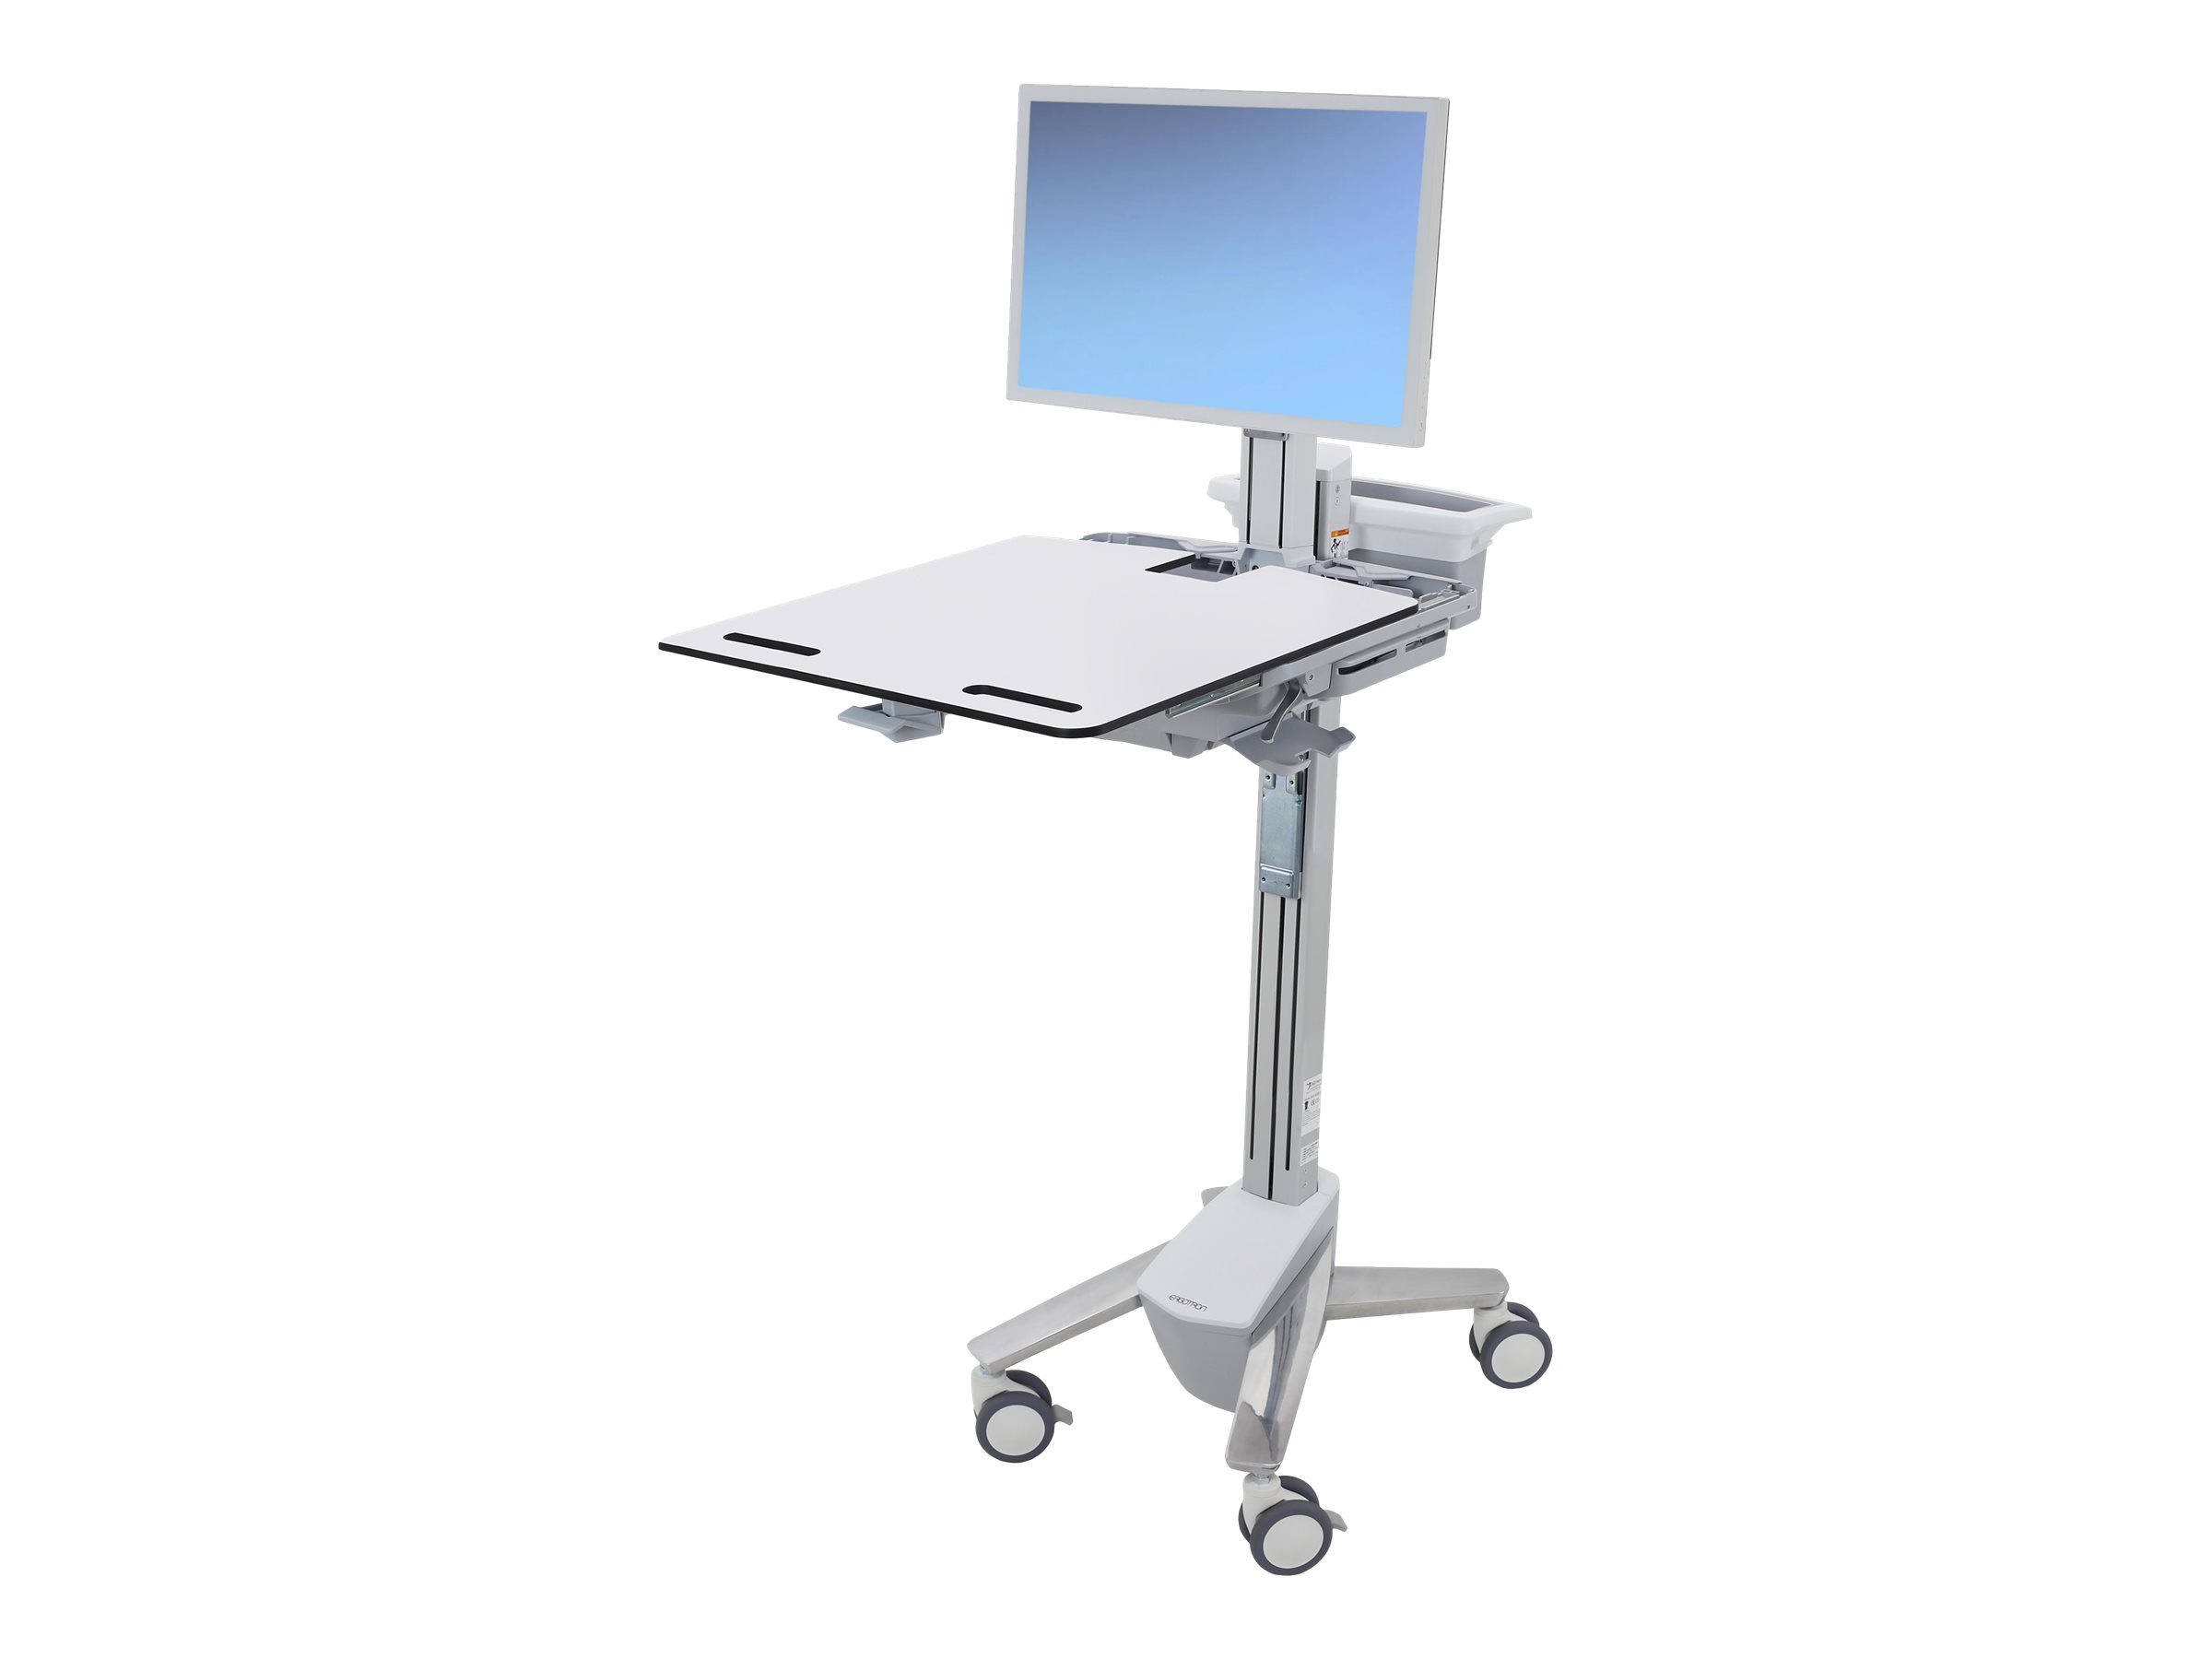 Ergotron Cart - Sliding Worksurface - Chariot - pour écran LCD/équipement PC - médical - aluminium, acier zingué, plastique haute qualité - Taille d'écran : jusqu'à 24 pouces - SV41-6320-0 - Chariots